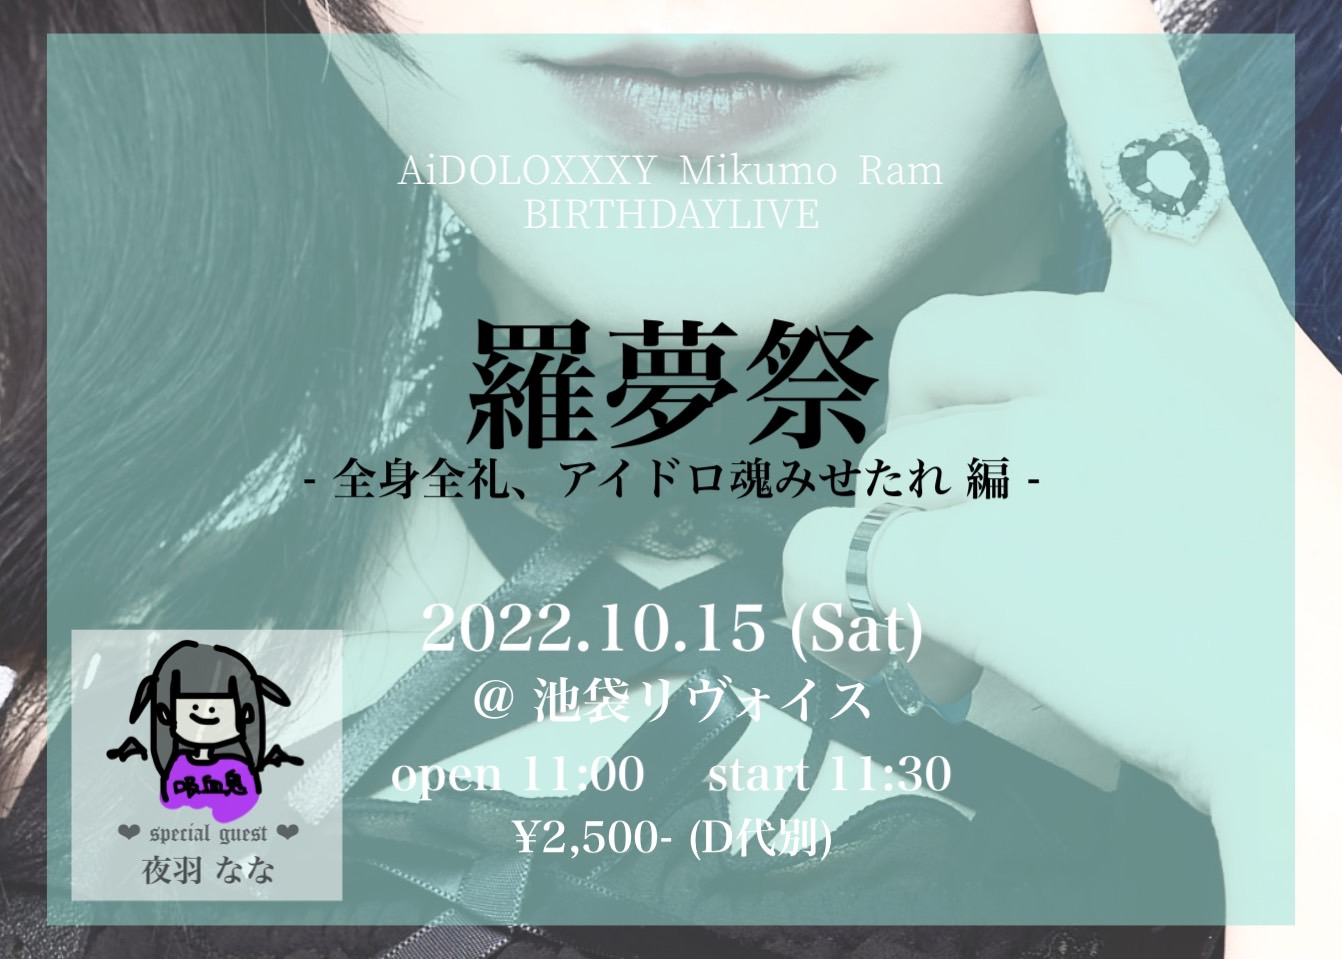 AiDOLOXXXY Mikumo Ram BIRTHDAY LIVE 「羅夢祭 -全身全礼、アイドロ魂みせたれ 編-」